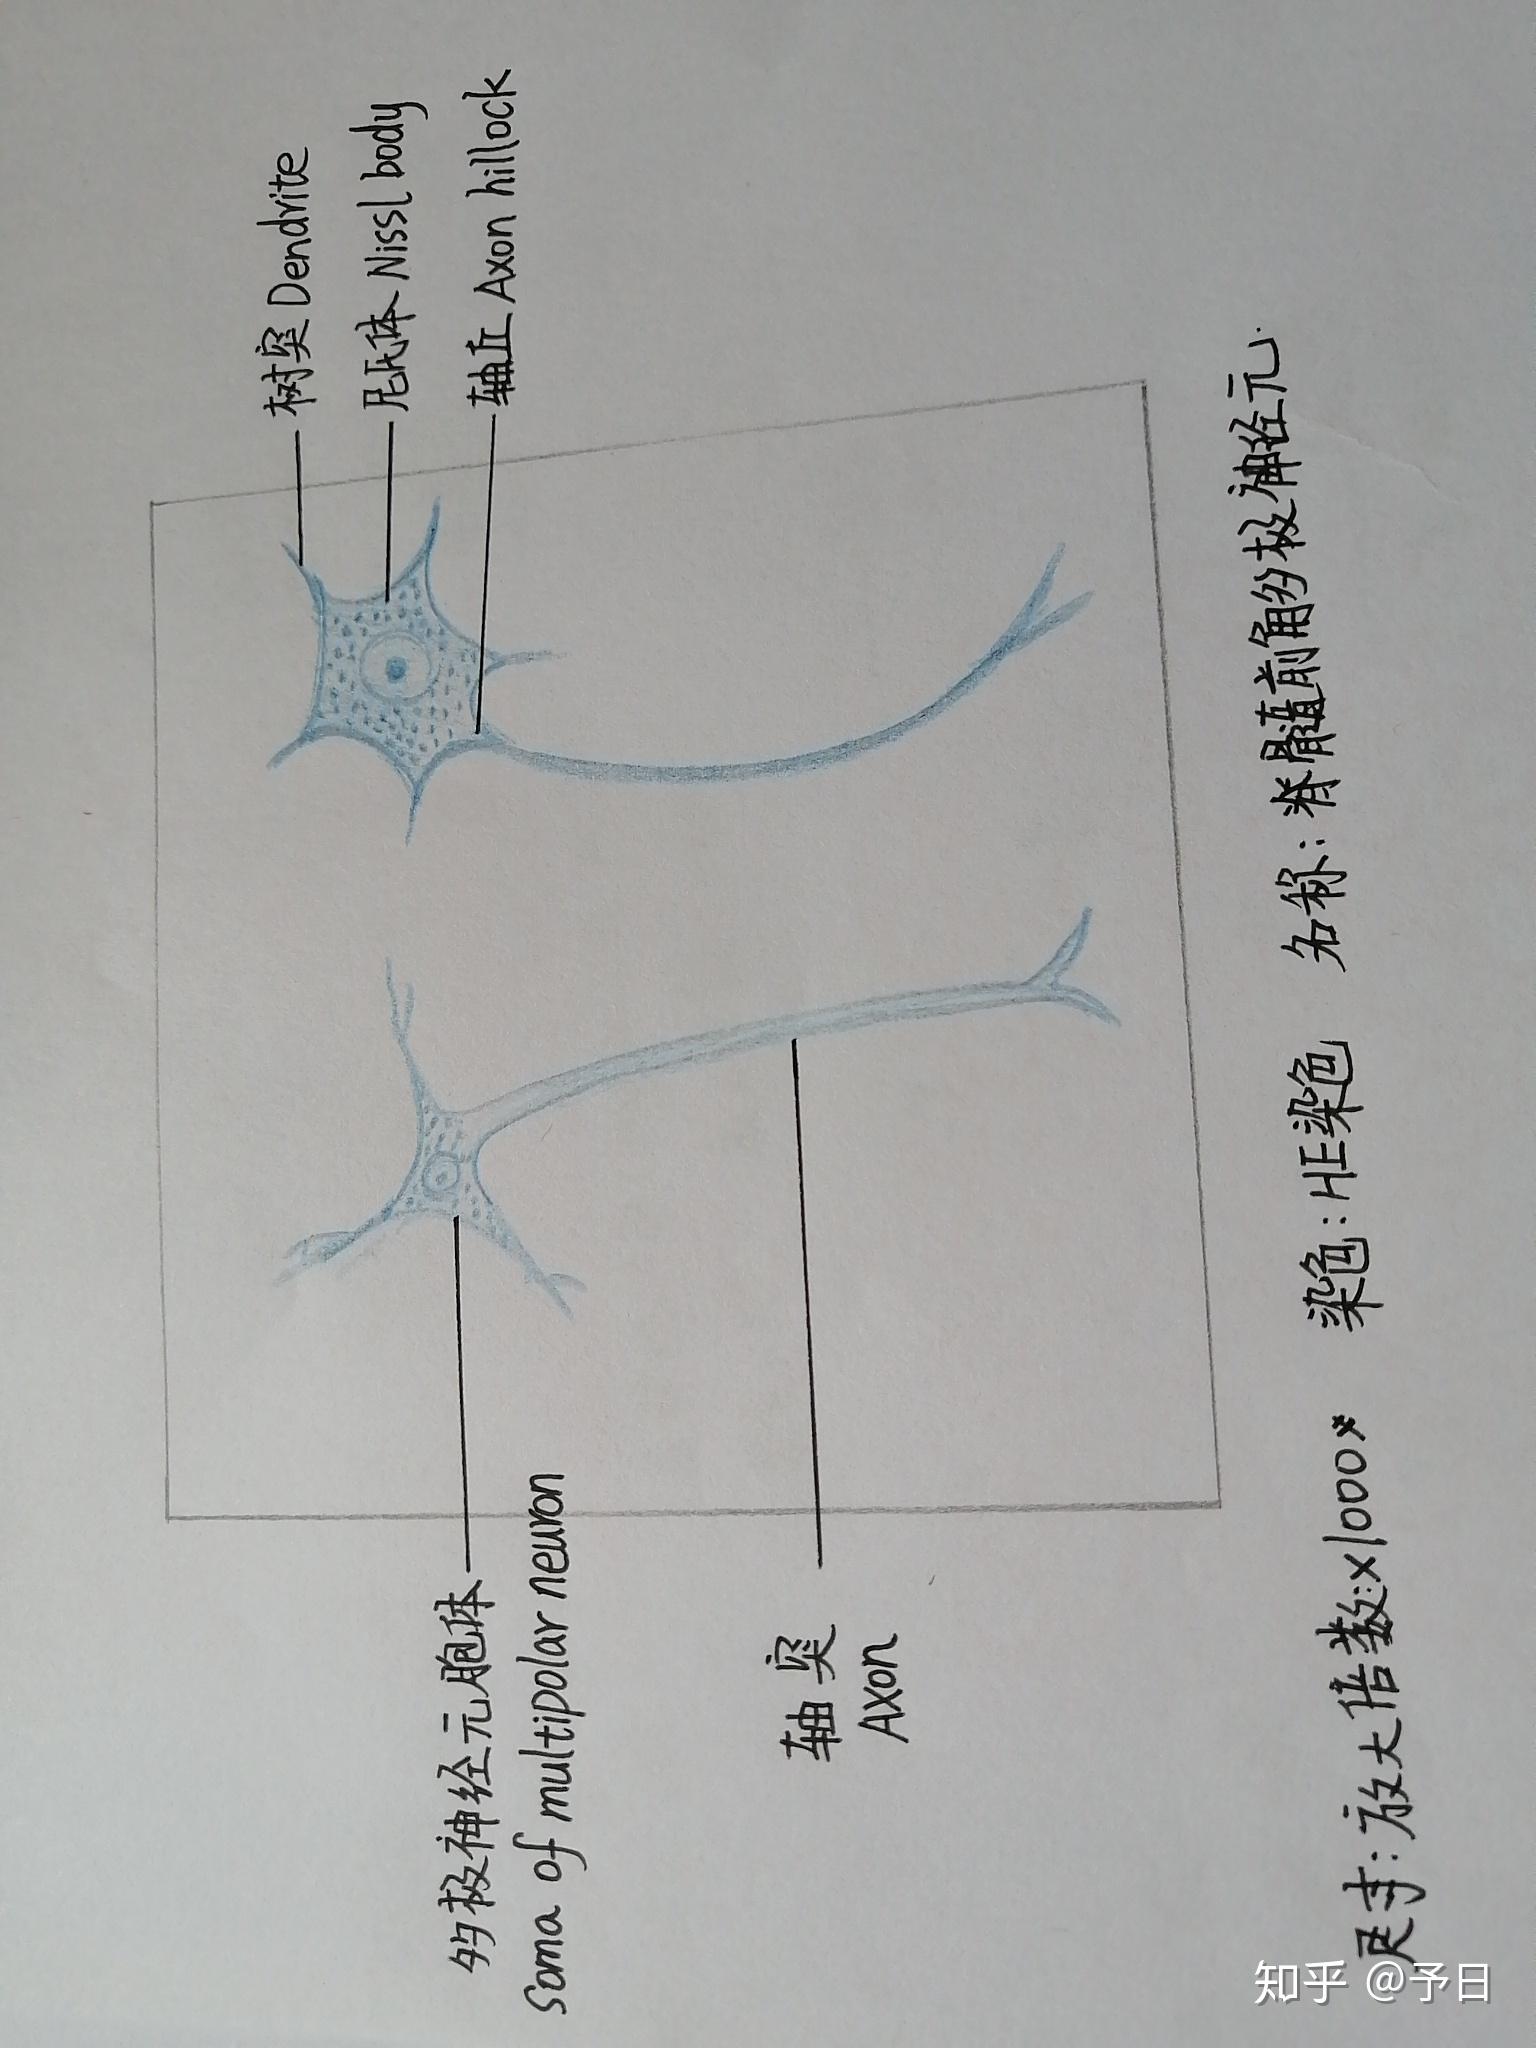 多级神经元手绘图图片